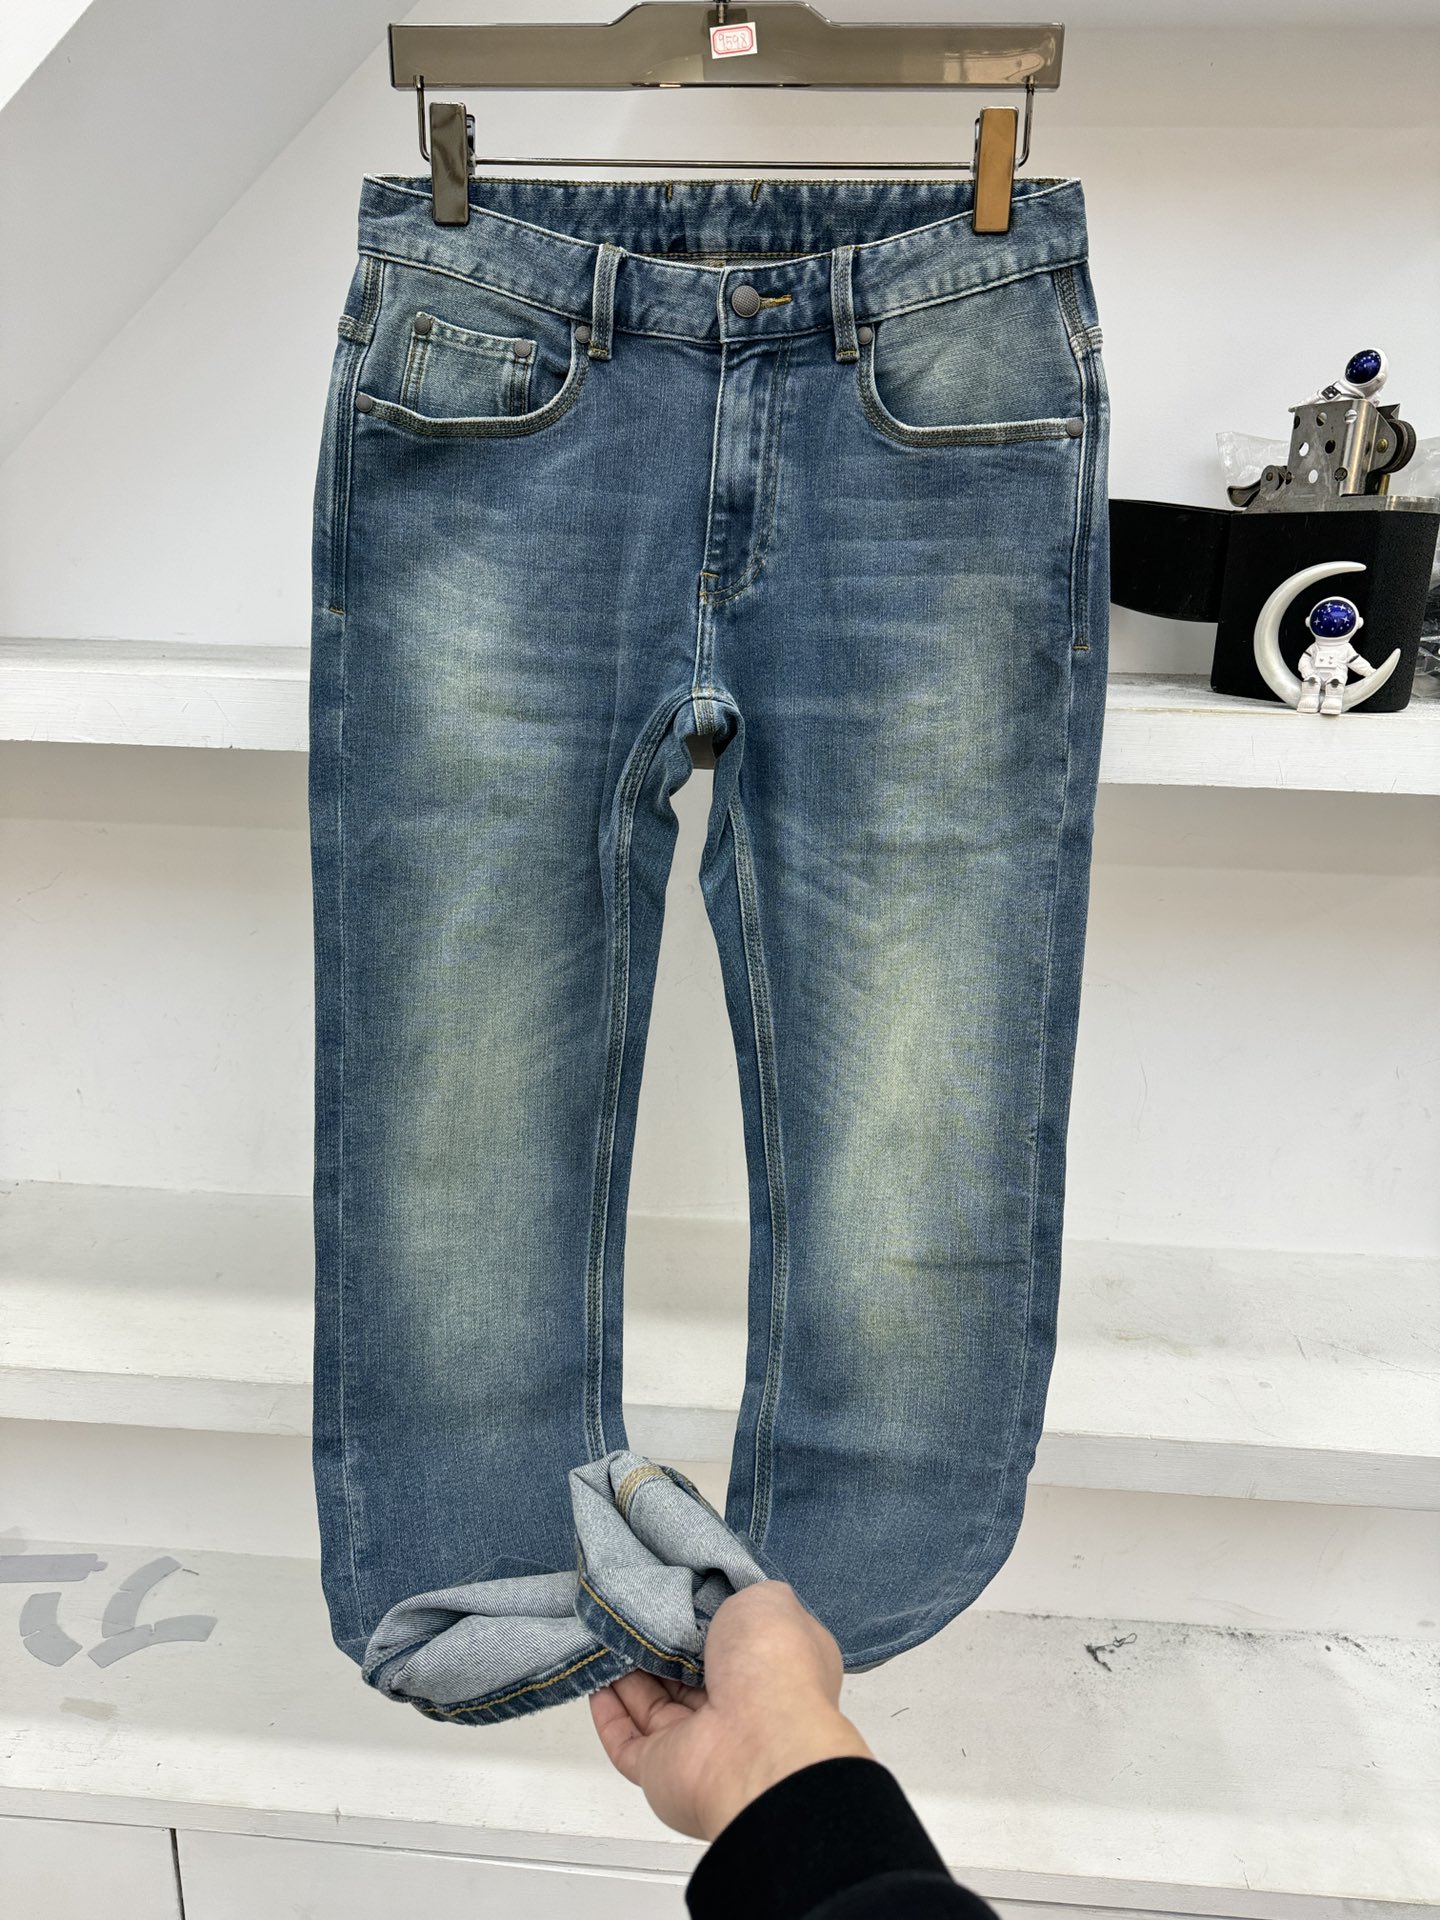 BV宝提佳s新季爆款牛仔裤专柜24原单外贸最新设计弹力舒适颜值品相超高的一款牛仔裤简约潮流感+旧感头层皮